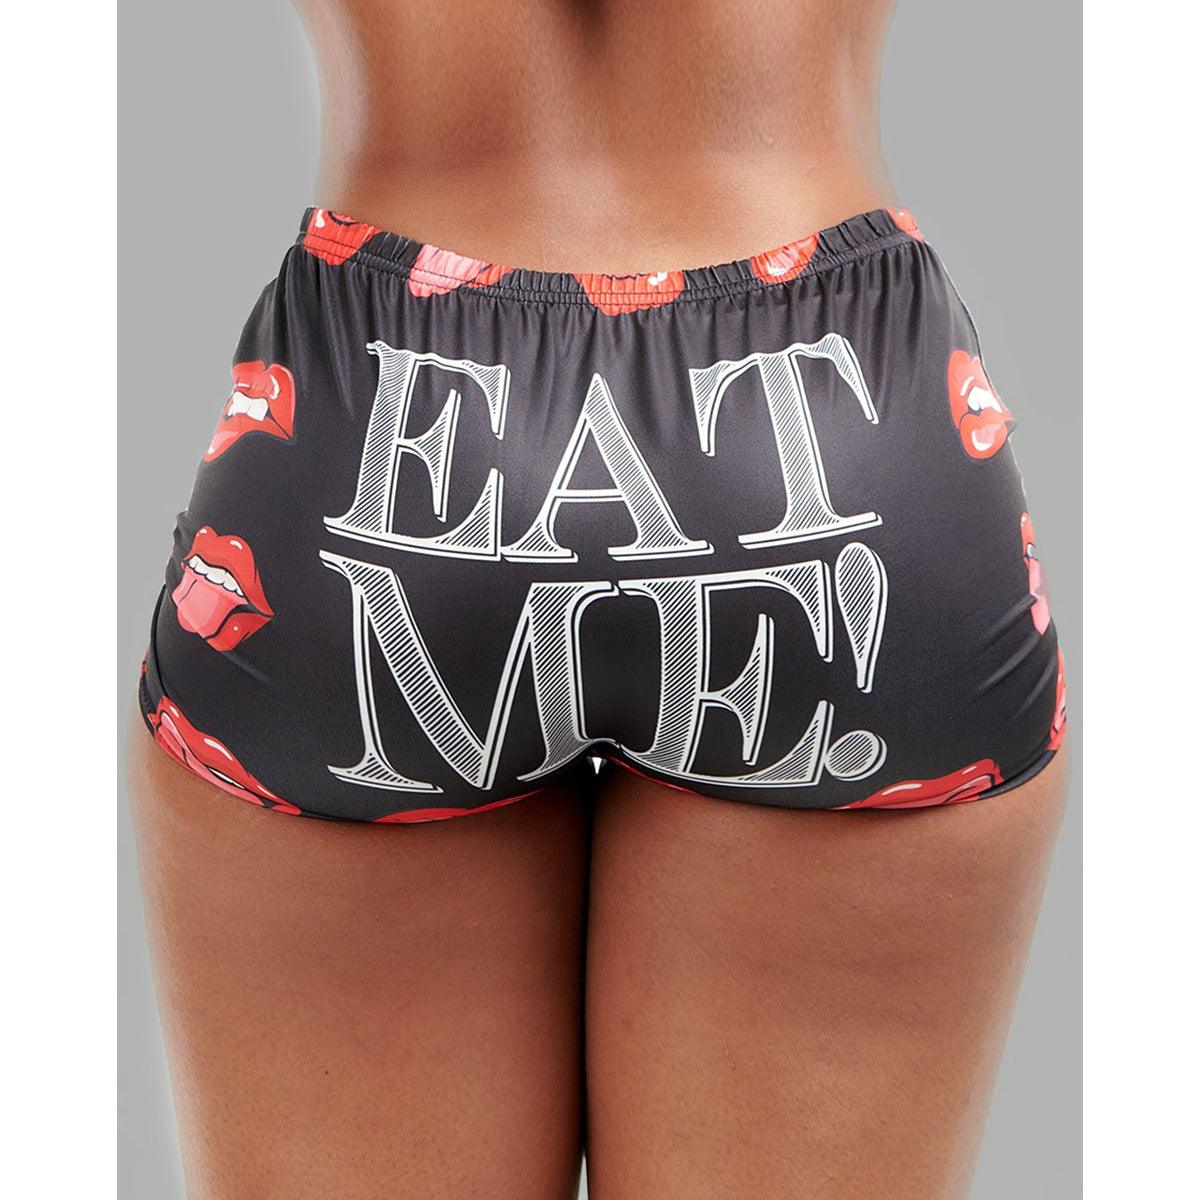 Eat Me Lips Shorts, Naughty Sleep Pants For Women - Wonder Skull